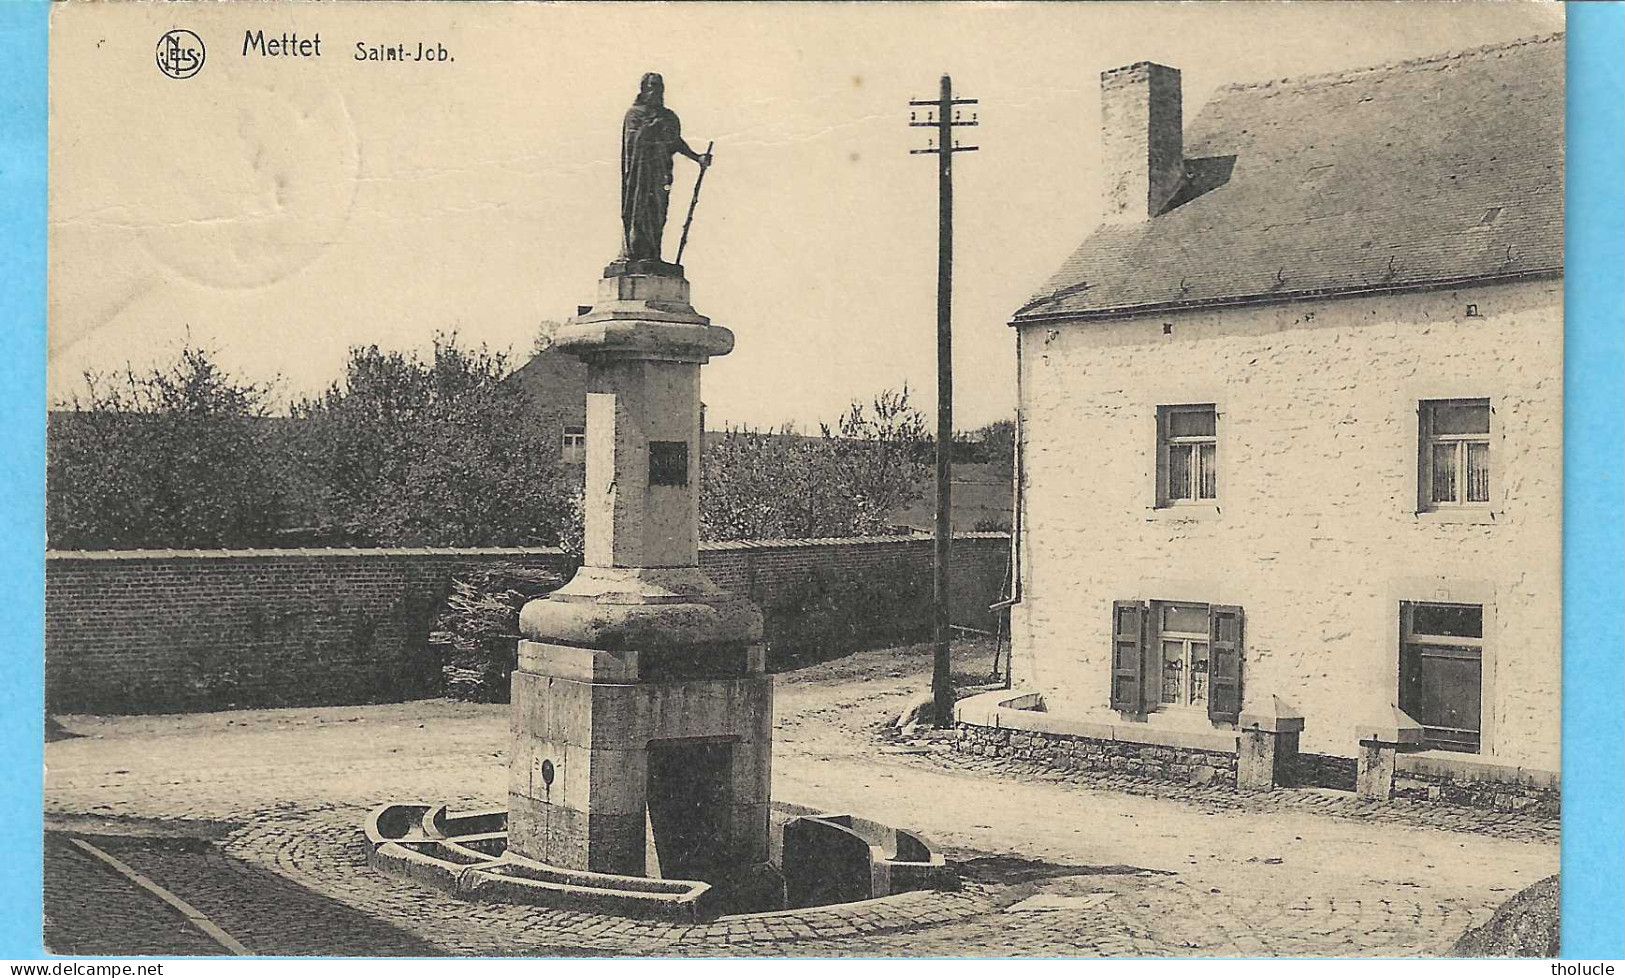 Mettet-Pr.Namur-1930-Fontaine Saint-Job-Abreuvoir-Poteau électrique En Bois-Cachet “Mettet-1930-Timbre Lion Hértaldique - Mettet